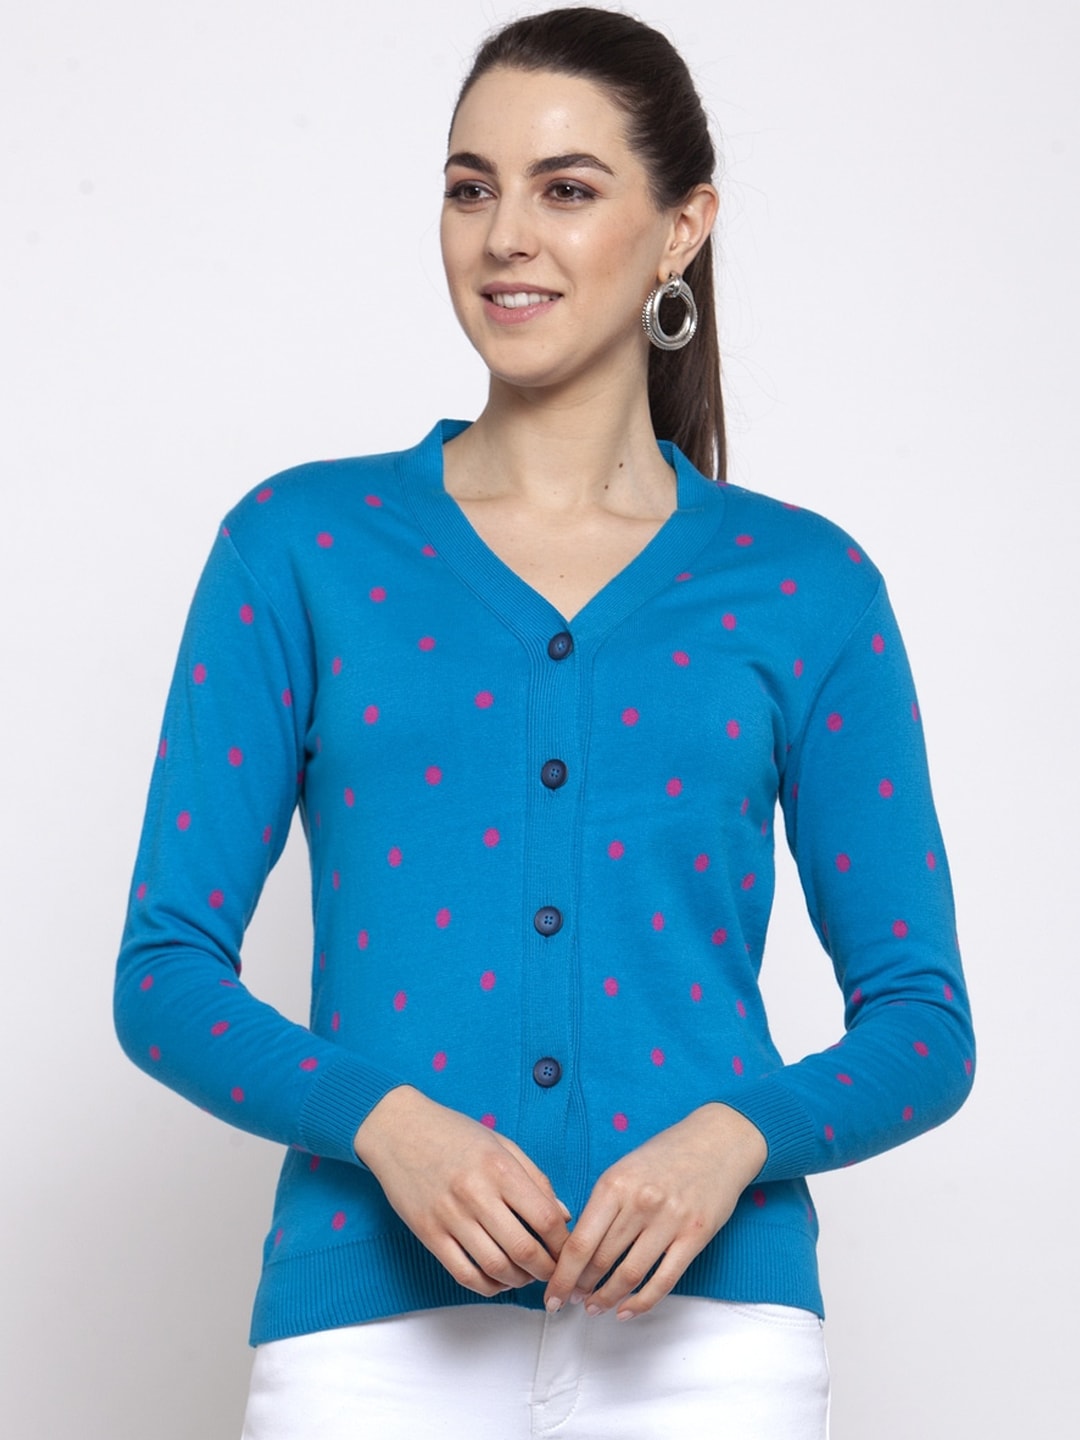 Kalt Women Blue & Pink Printed Cardigan Sweater Price in India